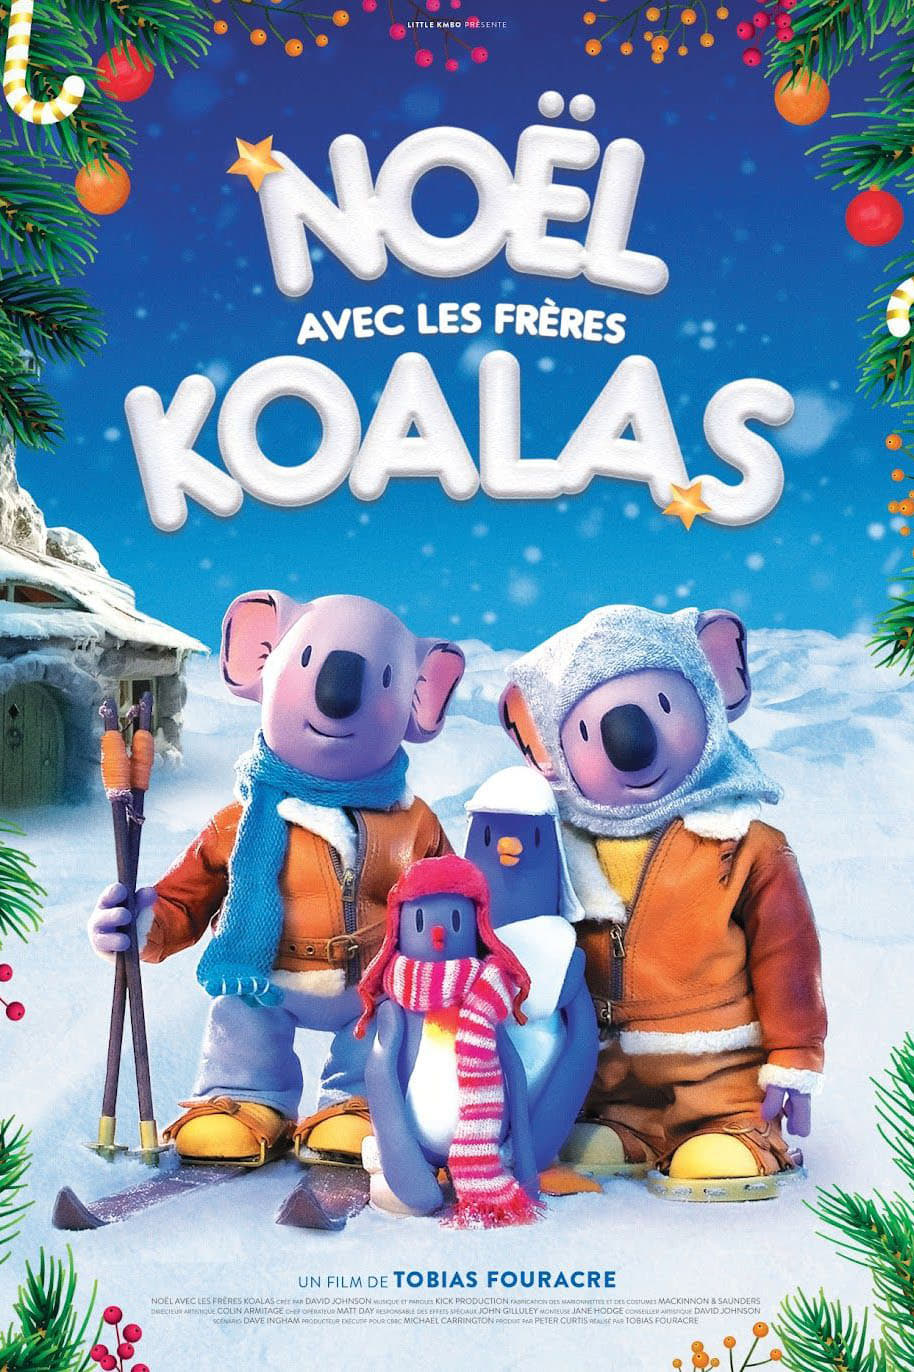 The Koala Brothers' Christmas